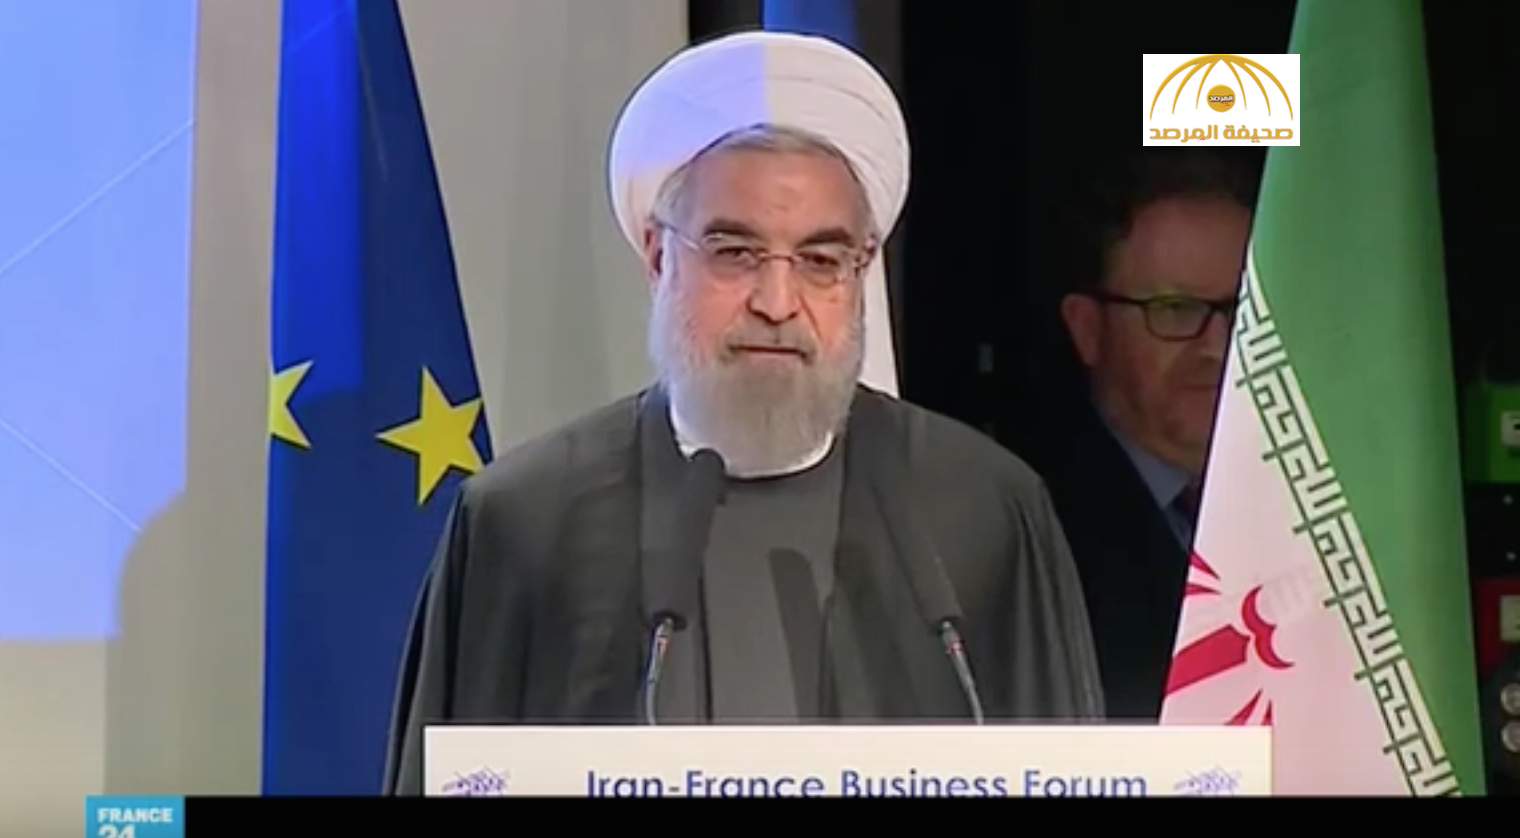 روحاني:على الرياض القيام بالخطوة الأولى لإعادة العلاقات الدبلوماسية بين بلدينا